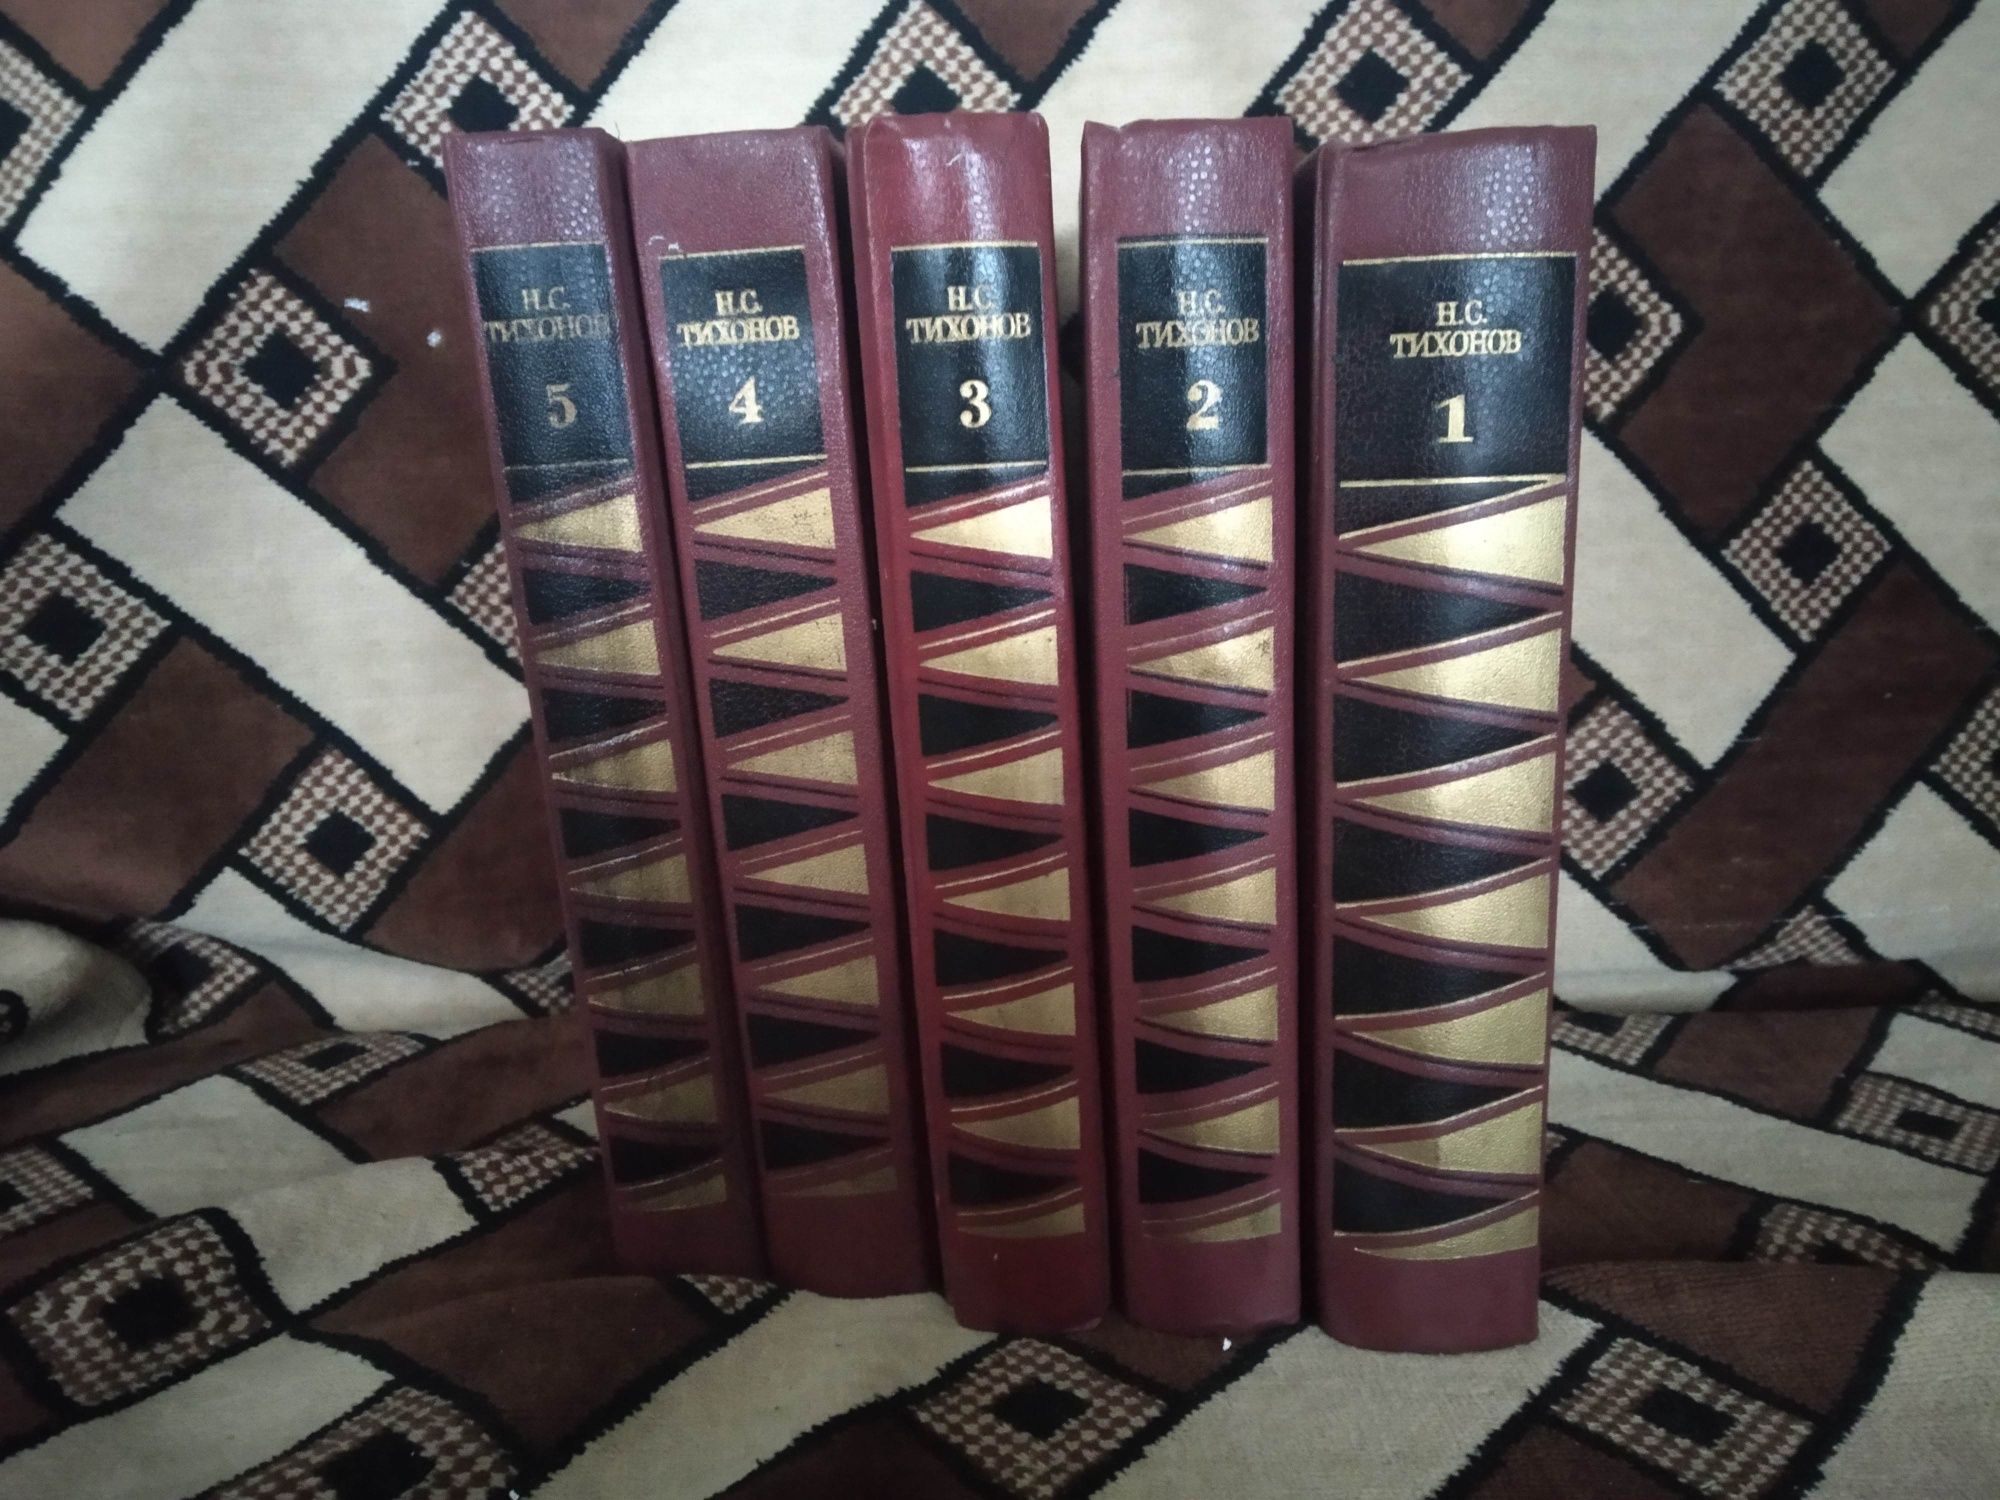 Н. С. Тихонов Собрание сочинений в 7 томах

Состояние: Отличное
Год: 1